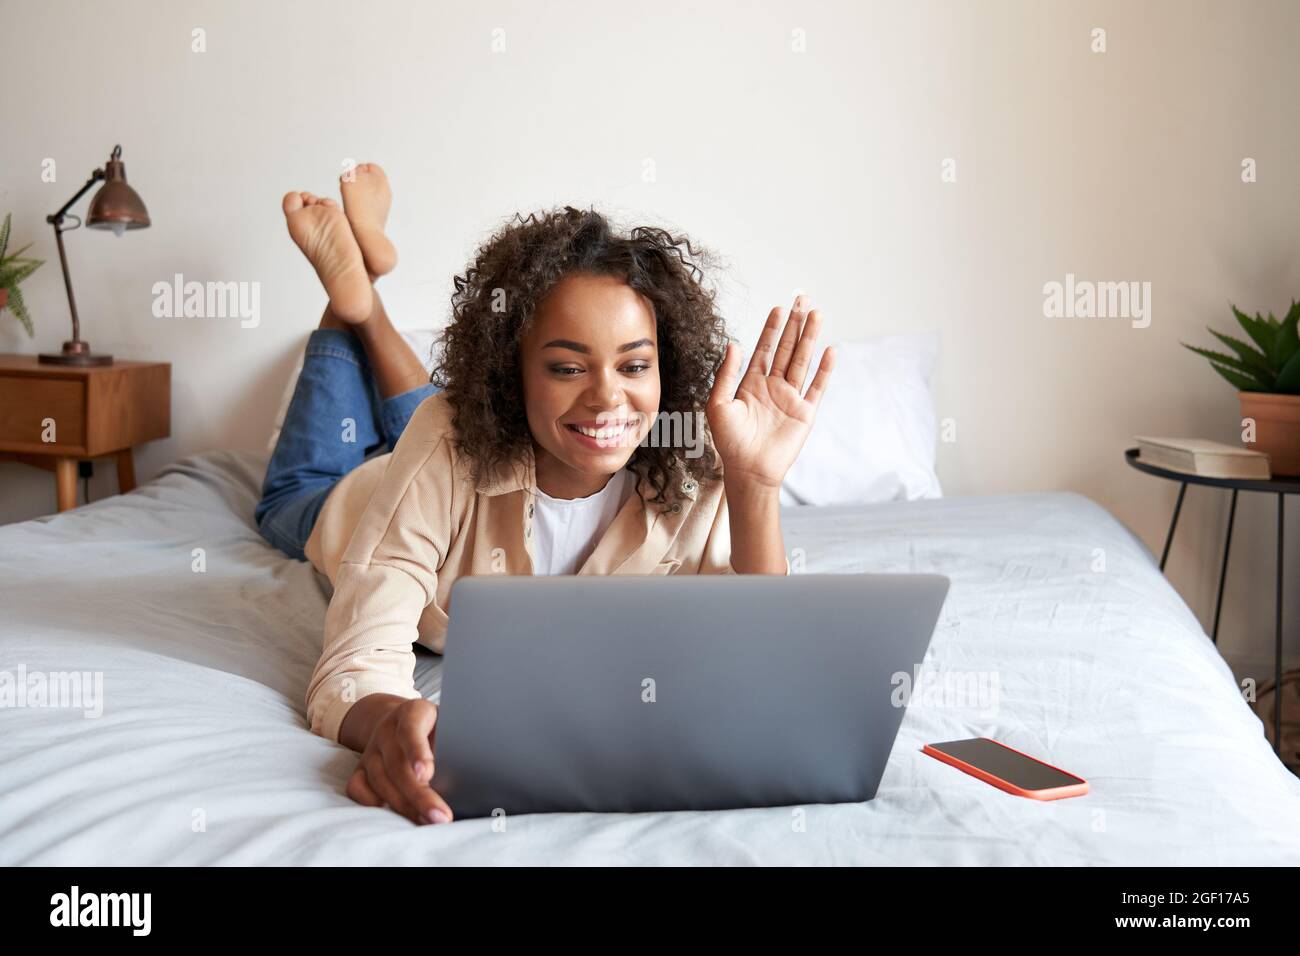 Junge afrikanische Frau, die auf dem Bett liegt, hat virtuelle Treffen, die mit dem Laptop die Hand winken. Stockfoto